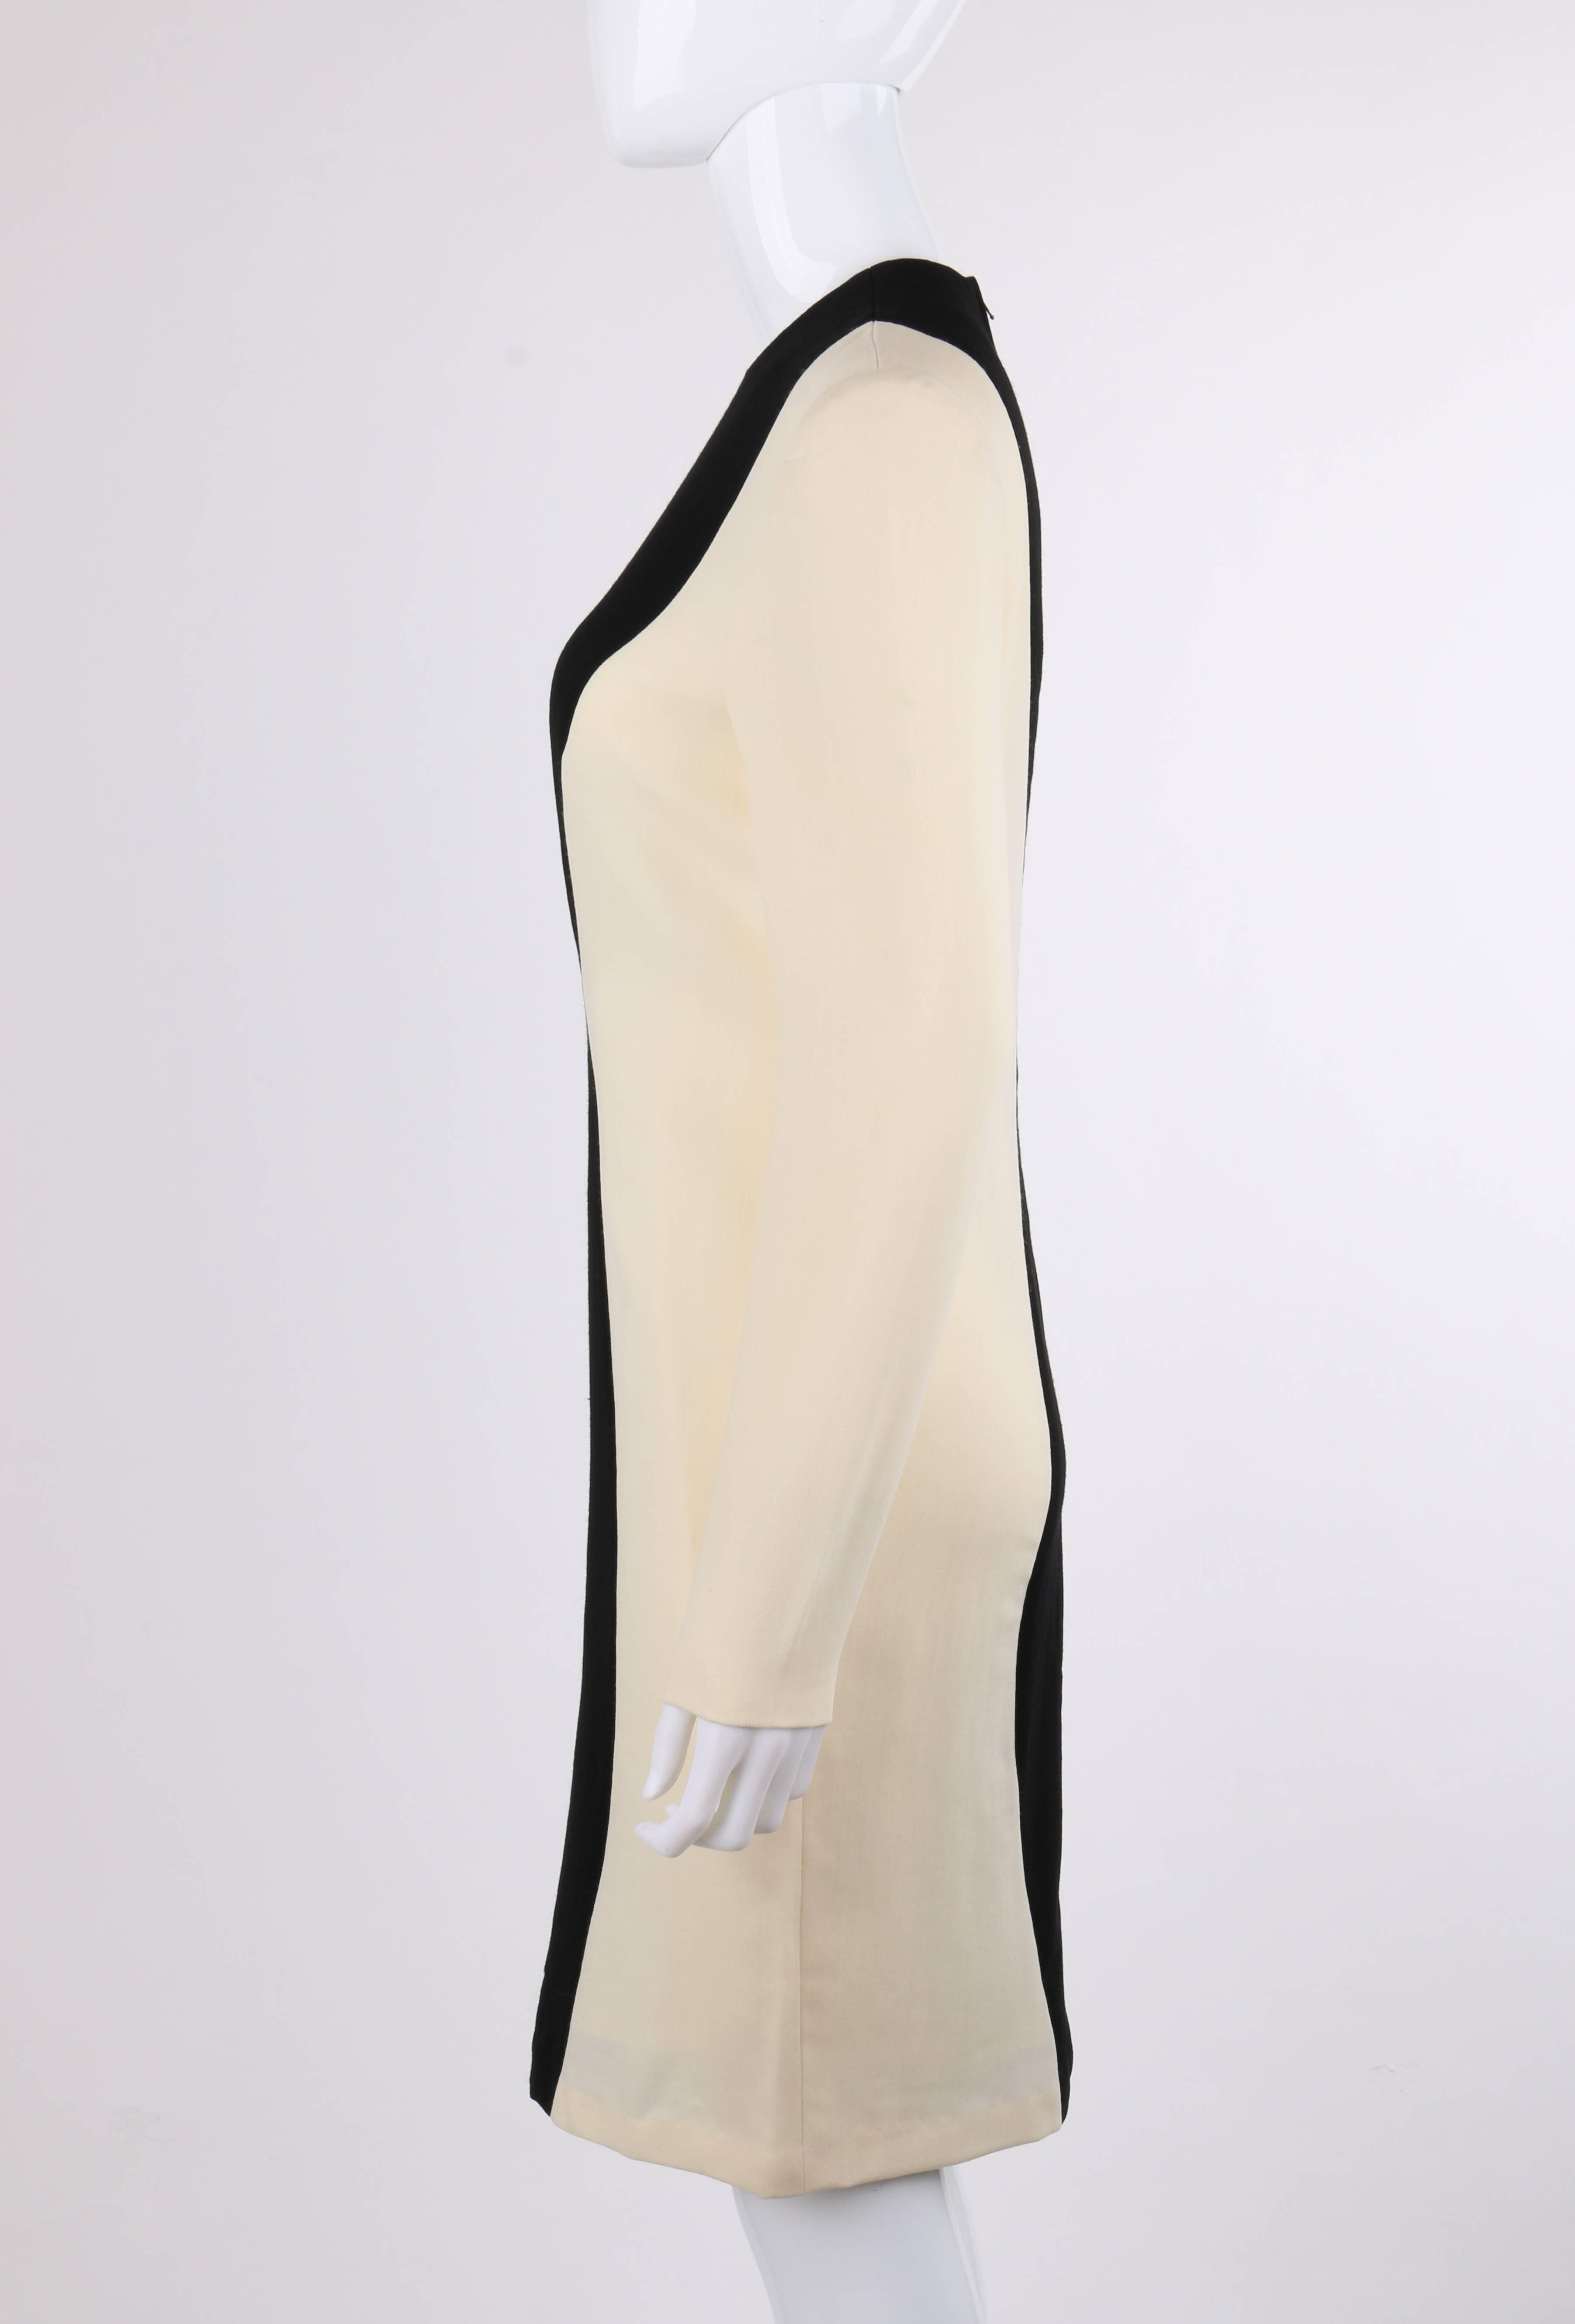 PIERRE CARDIN Robe droite à manches longues en laine noire et ivoire à empiècements de couleurs, années 1980 Pour femmes en vente